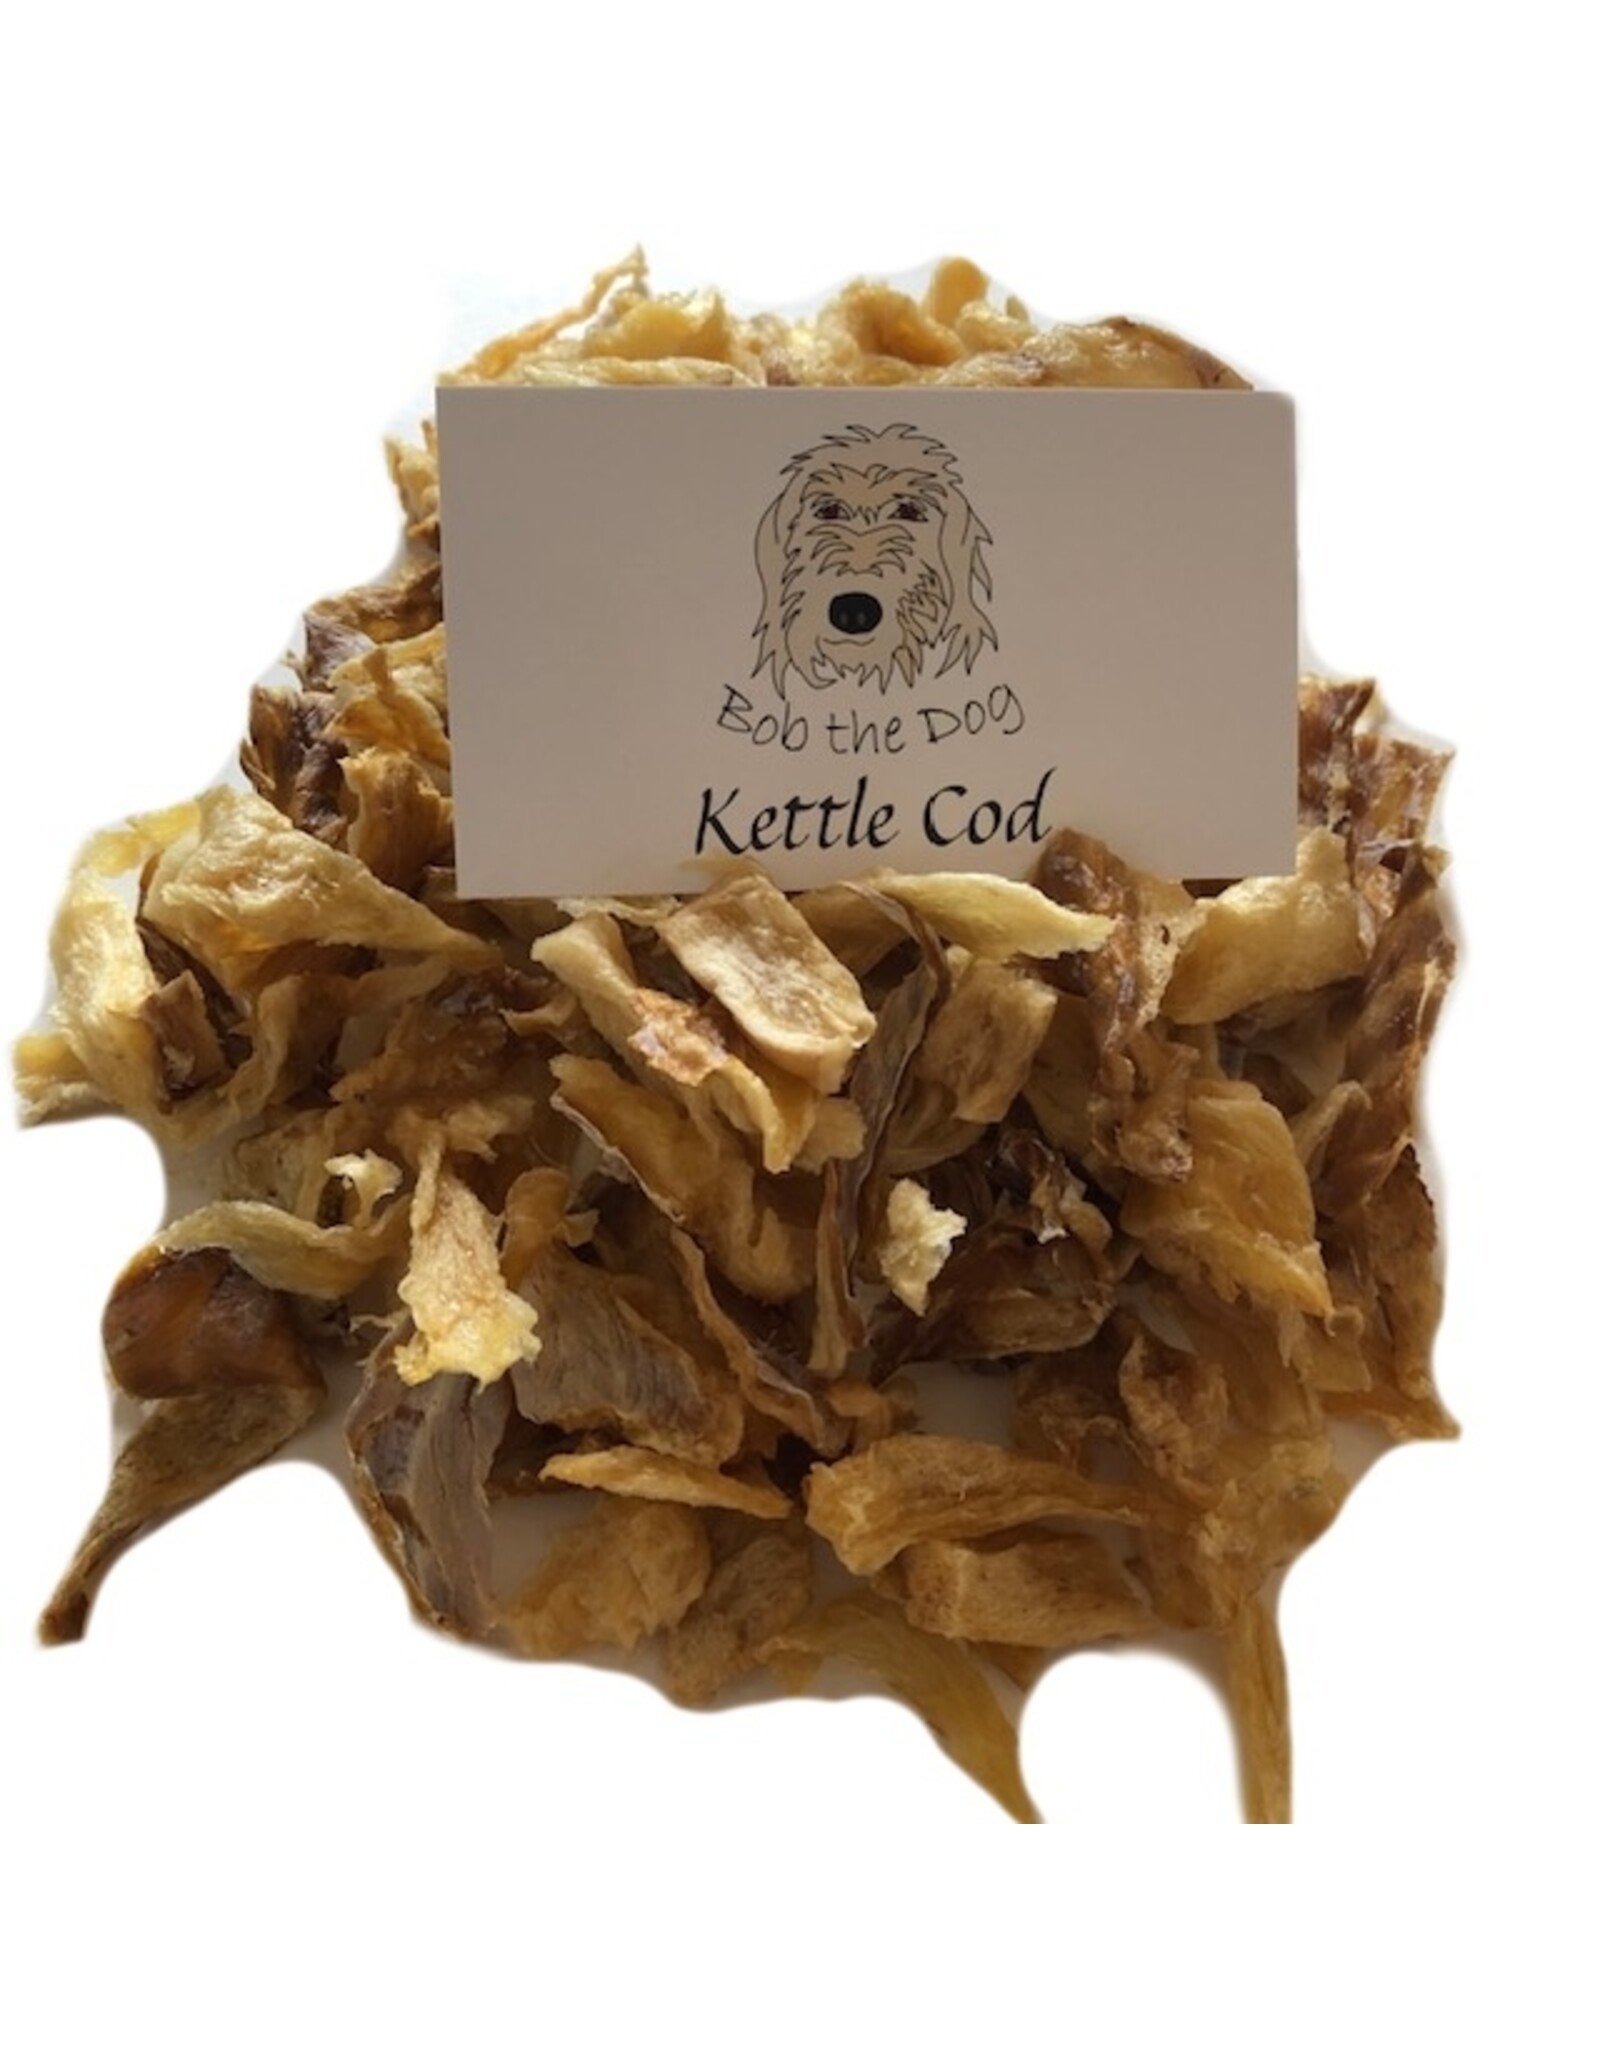 Bob the Dog Kettle Cod Treats 60g